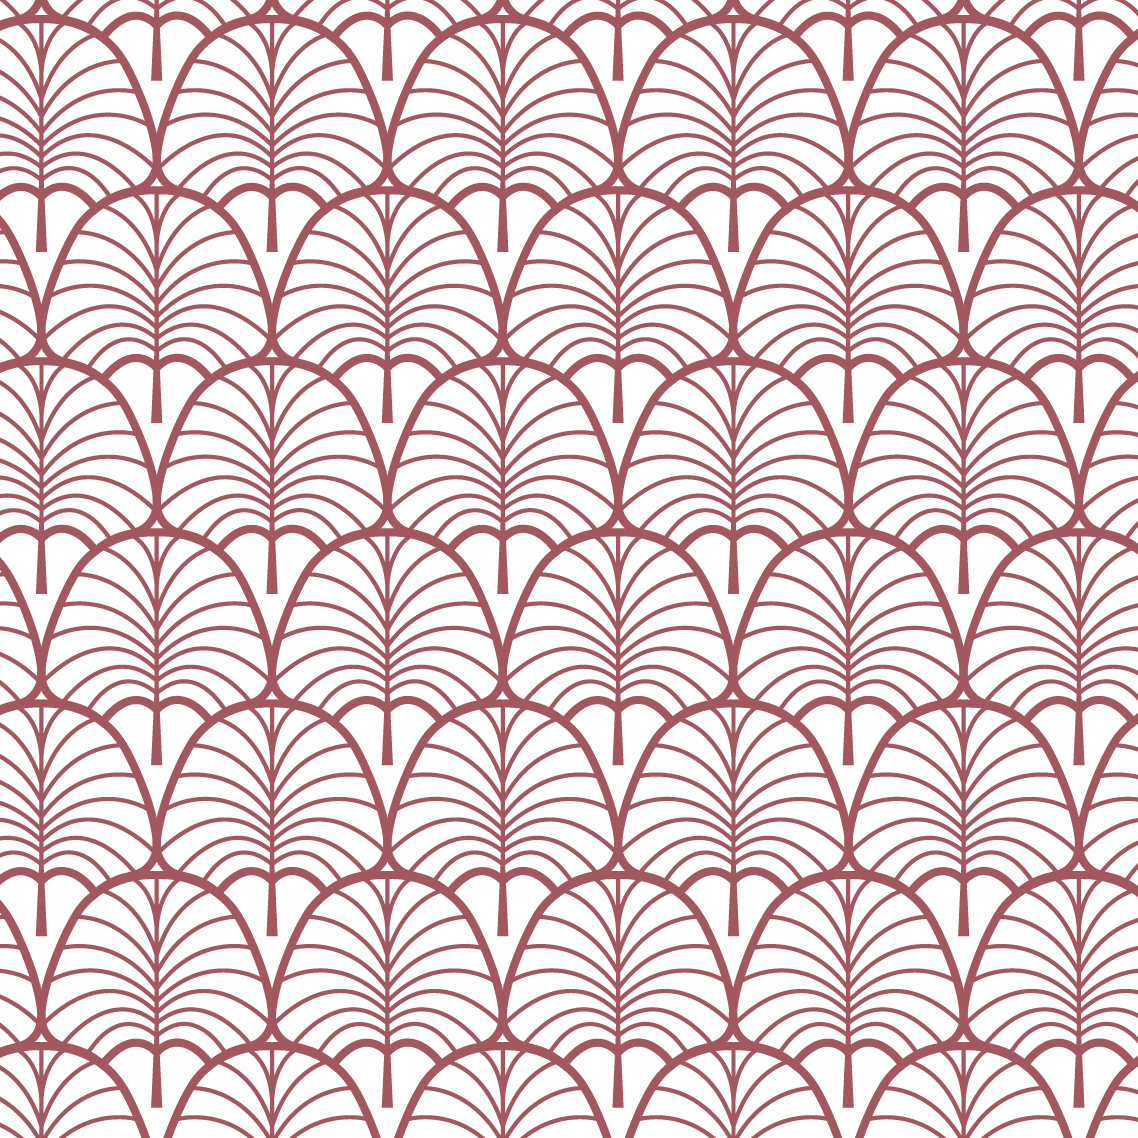 Oval leaves patterns in garnet